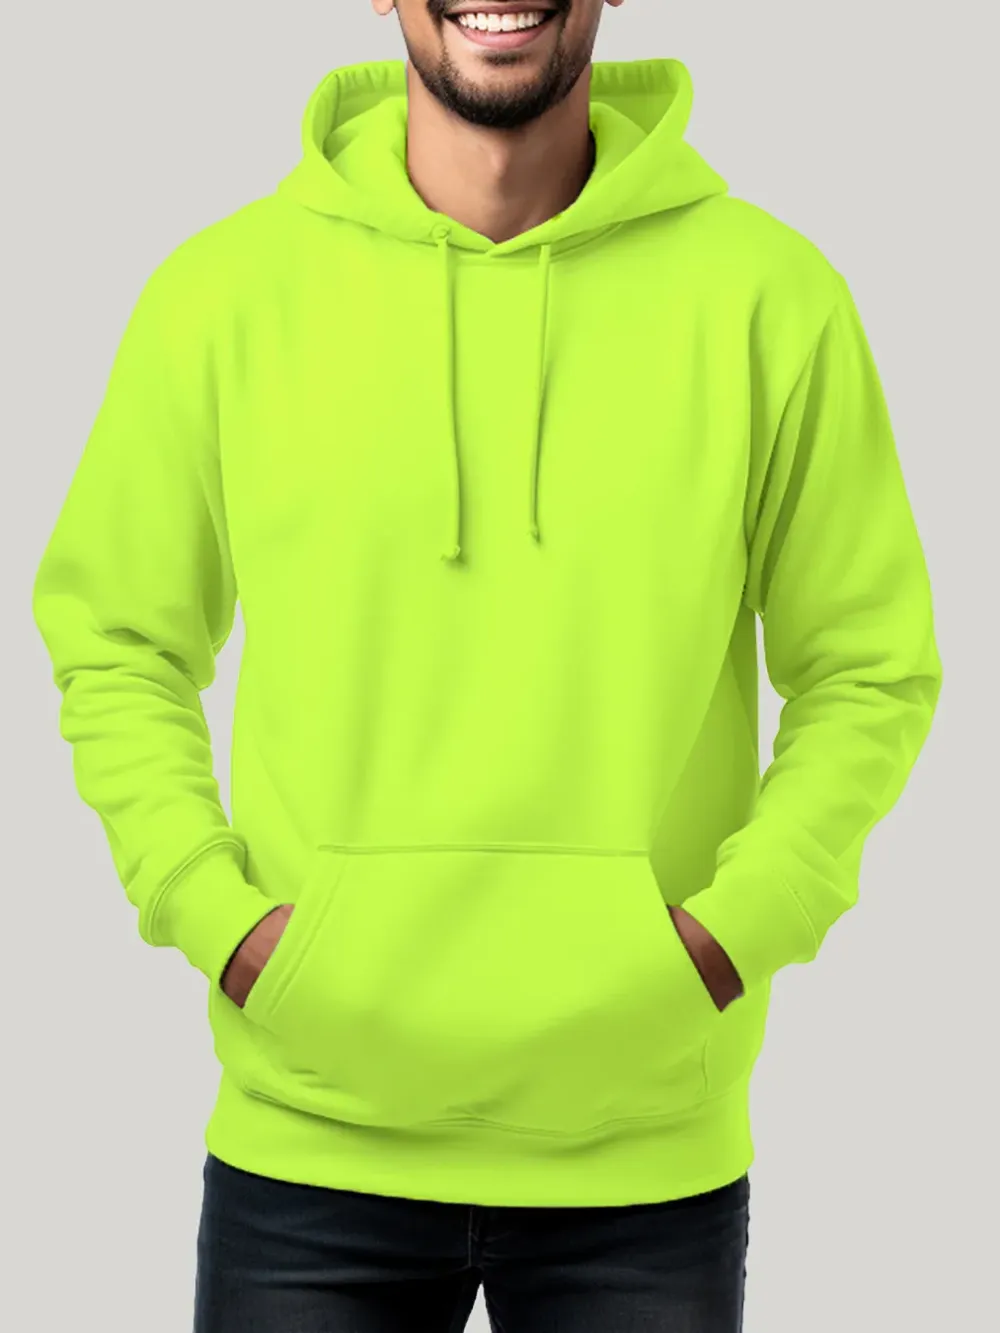 Men's-neon-hoodie-sweatshirt-shirt-neon-green